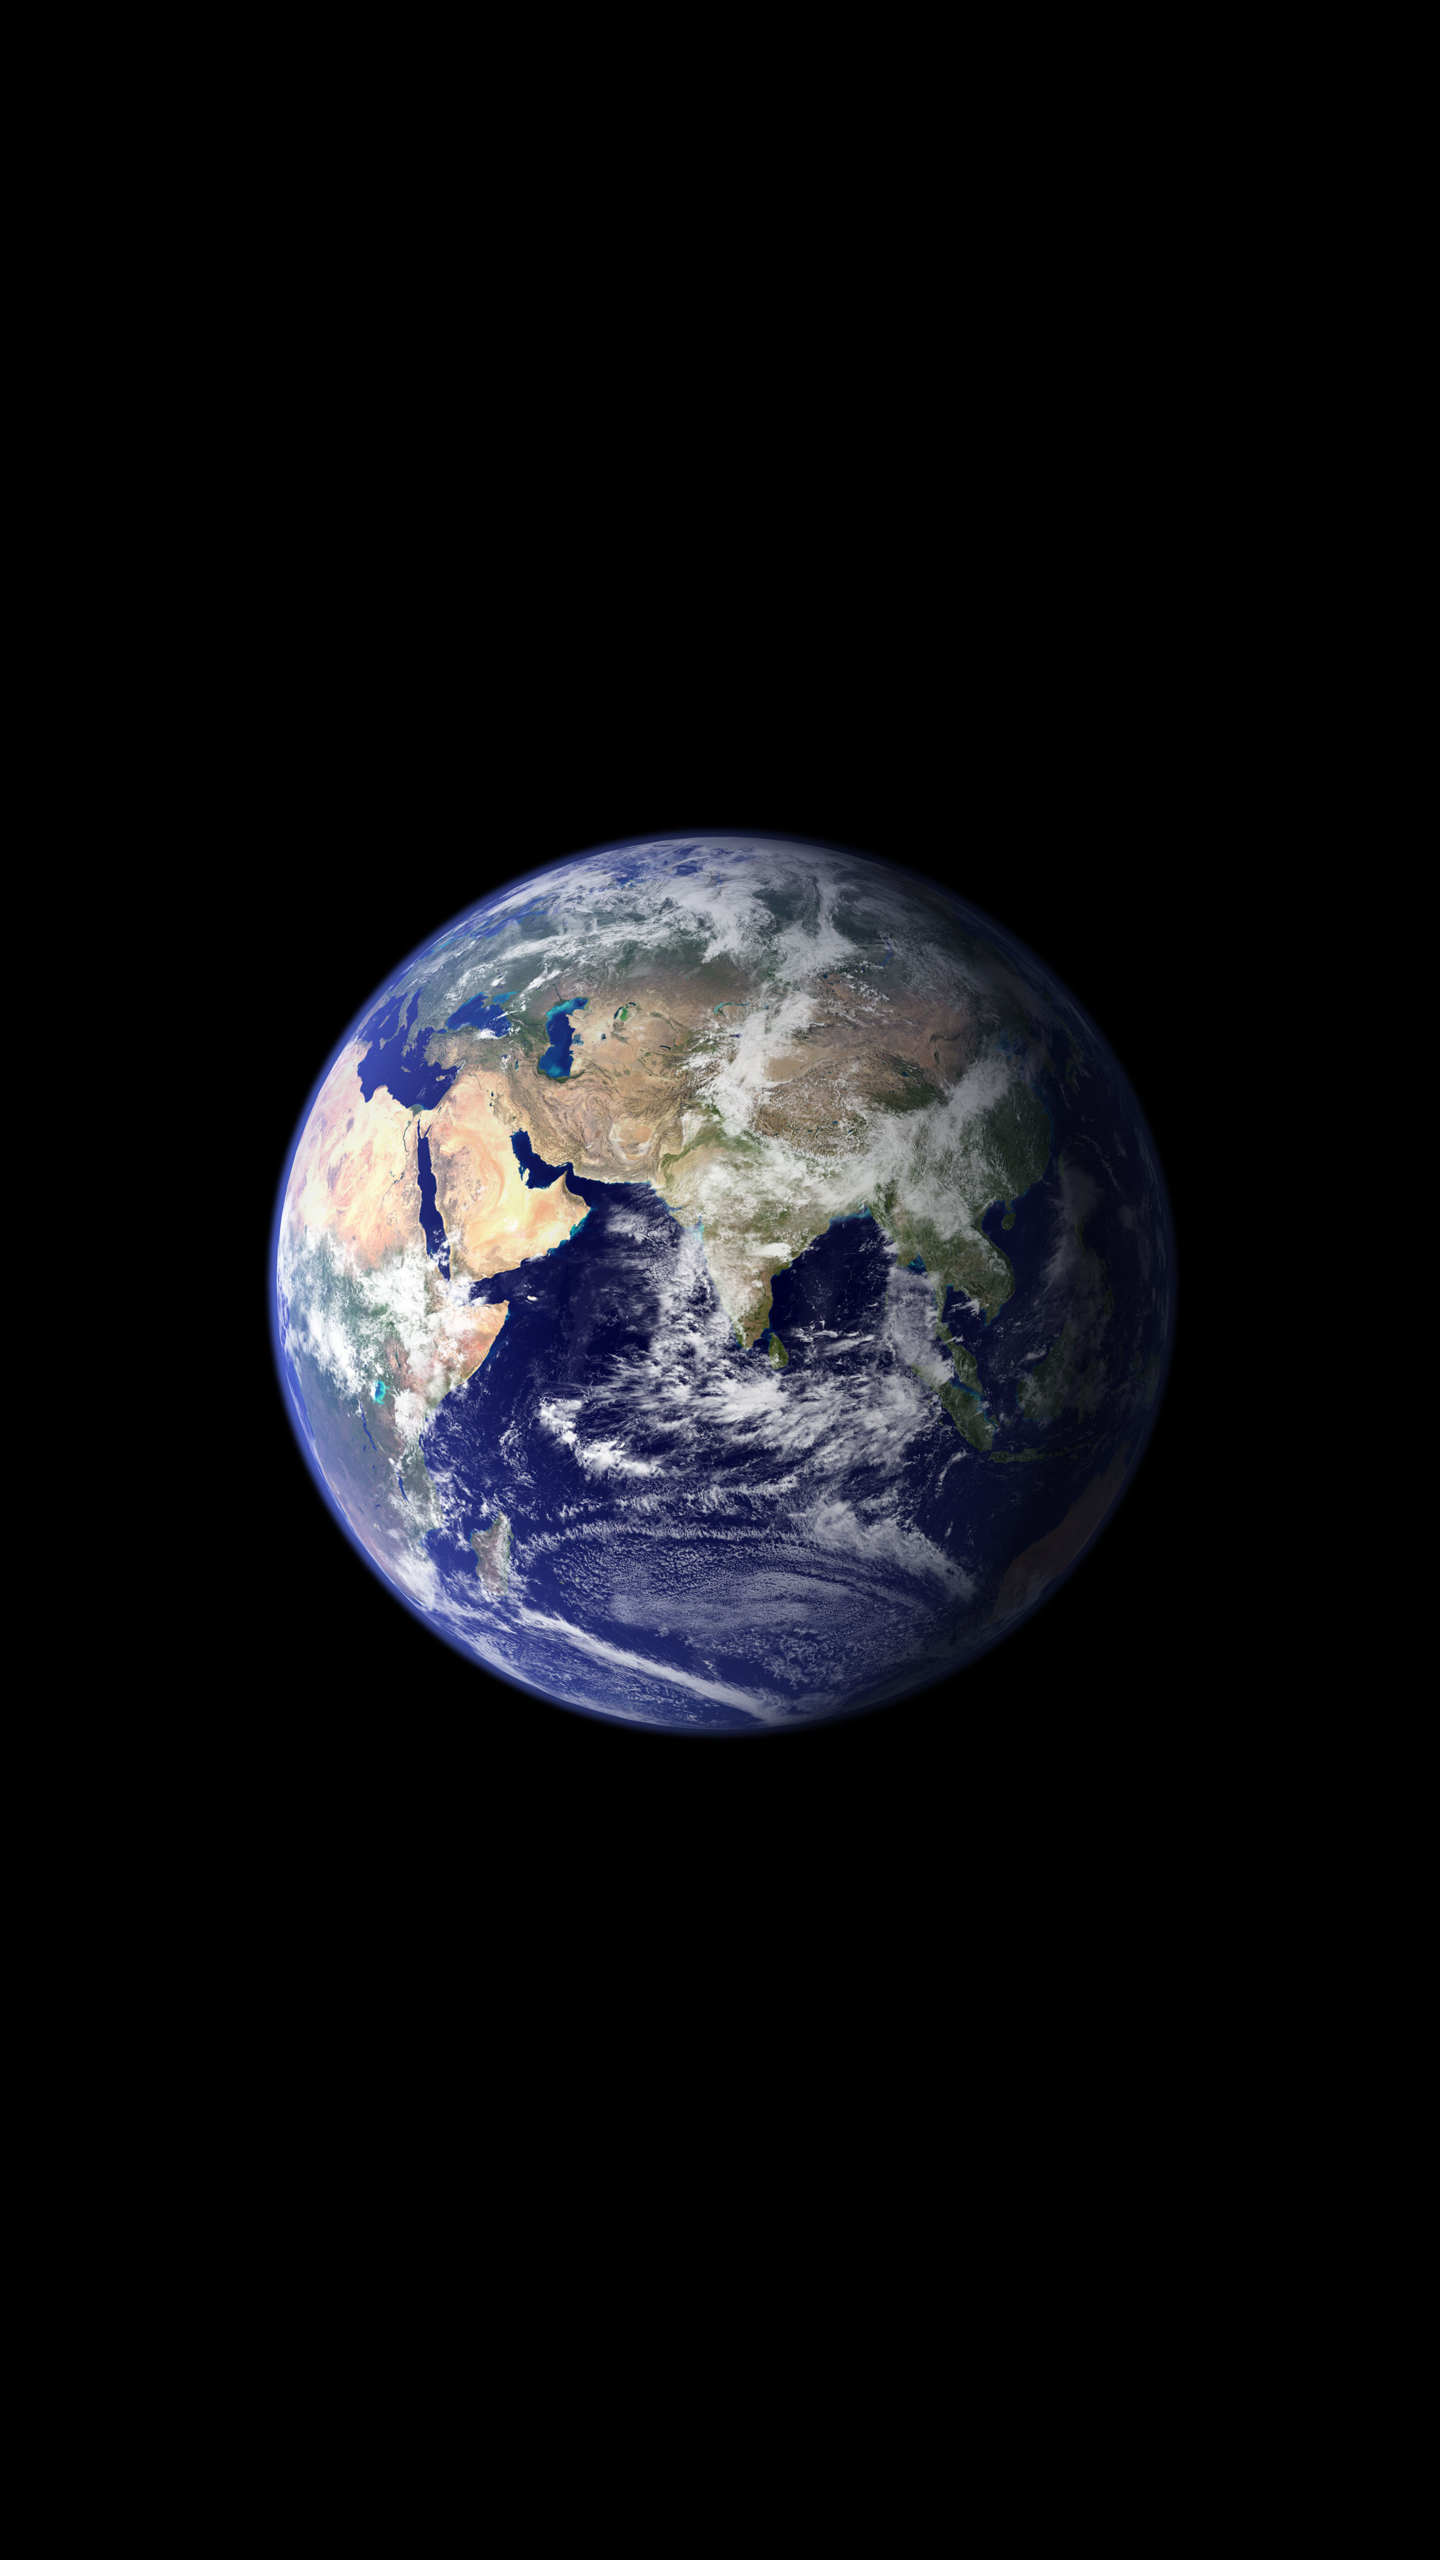 Earth 1440p 2K OLED Wallpaper. Galaksiler, Arkaplan Tasarımları, Uzayda Yolculuk